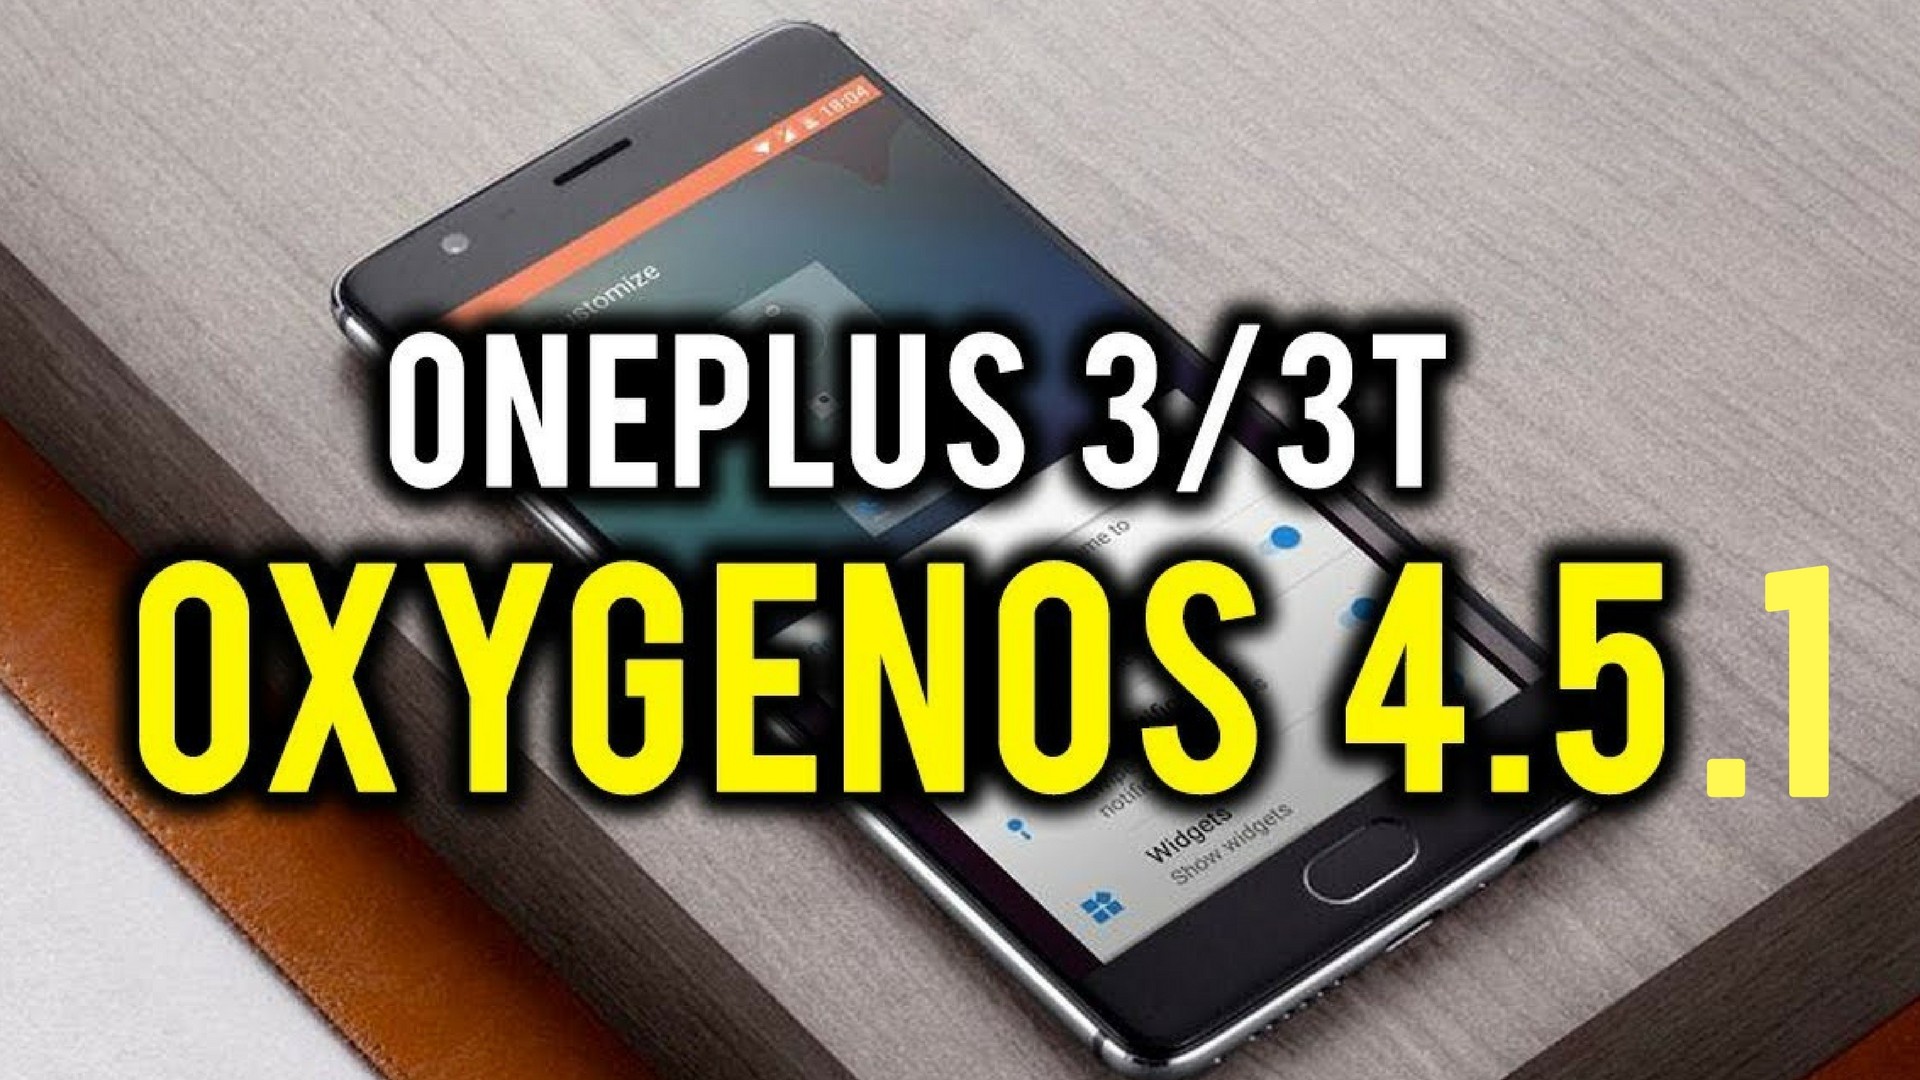 Actualización de OxygenOS 4.5.1 para OnePlus 3/3T como OTA